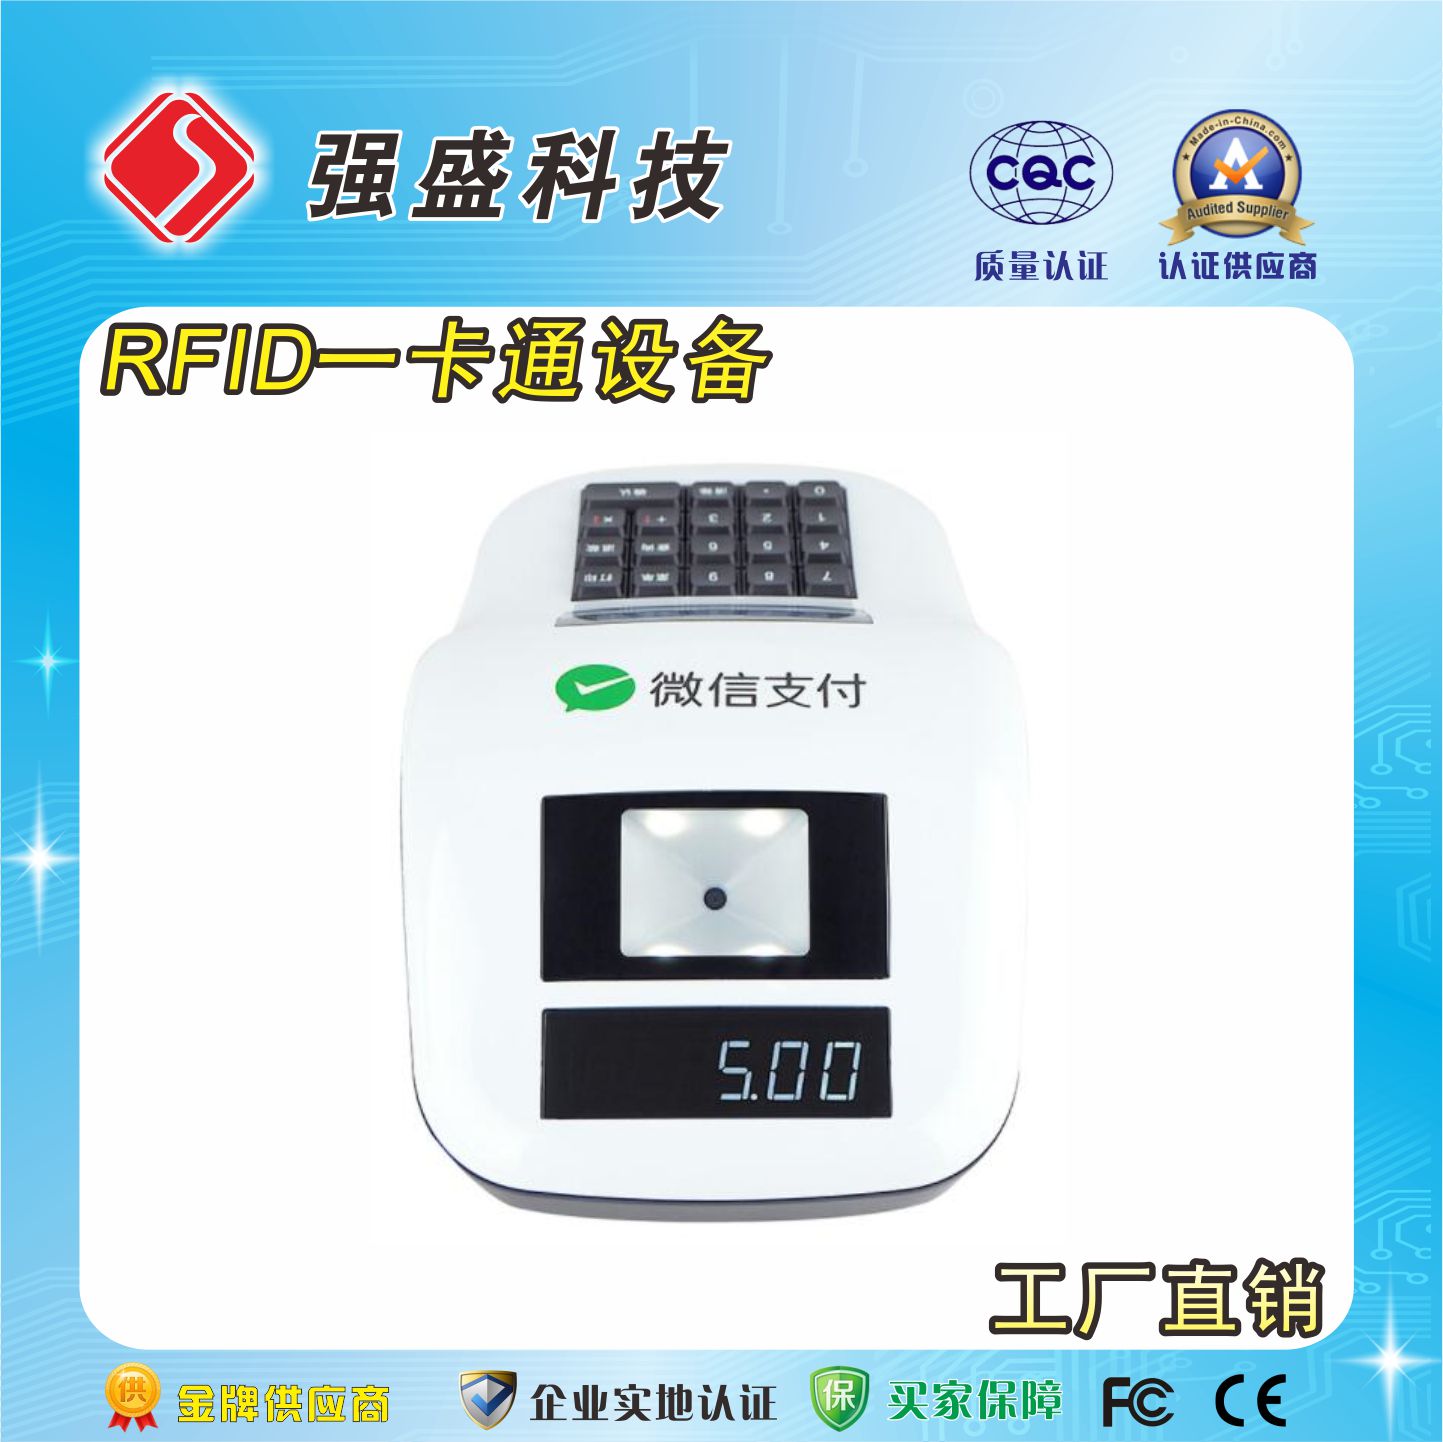 台式消费机 QS-OFS6 IC卡云消费机 批量供应校园饭堂刷卡机3